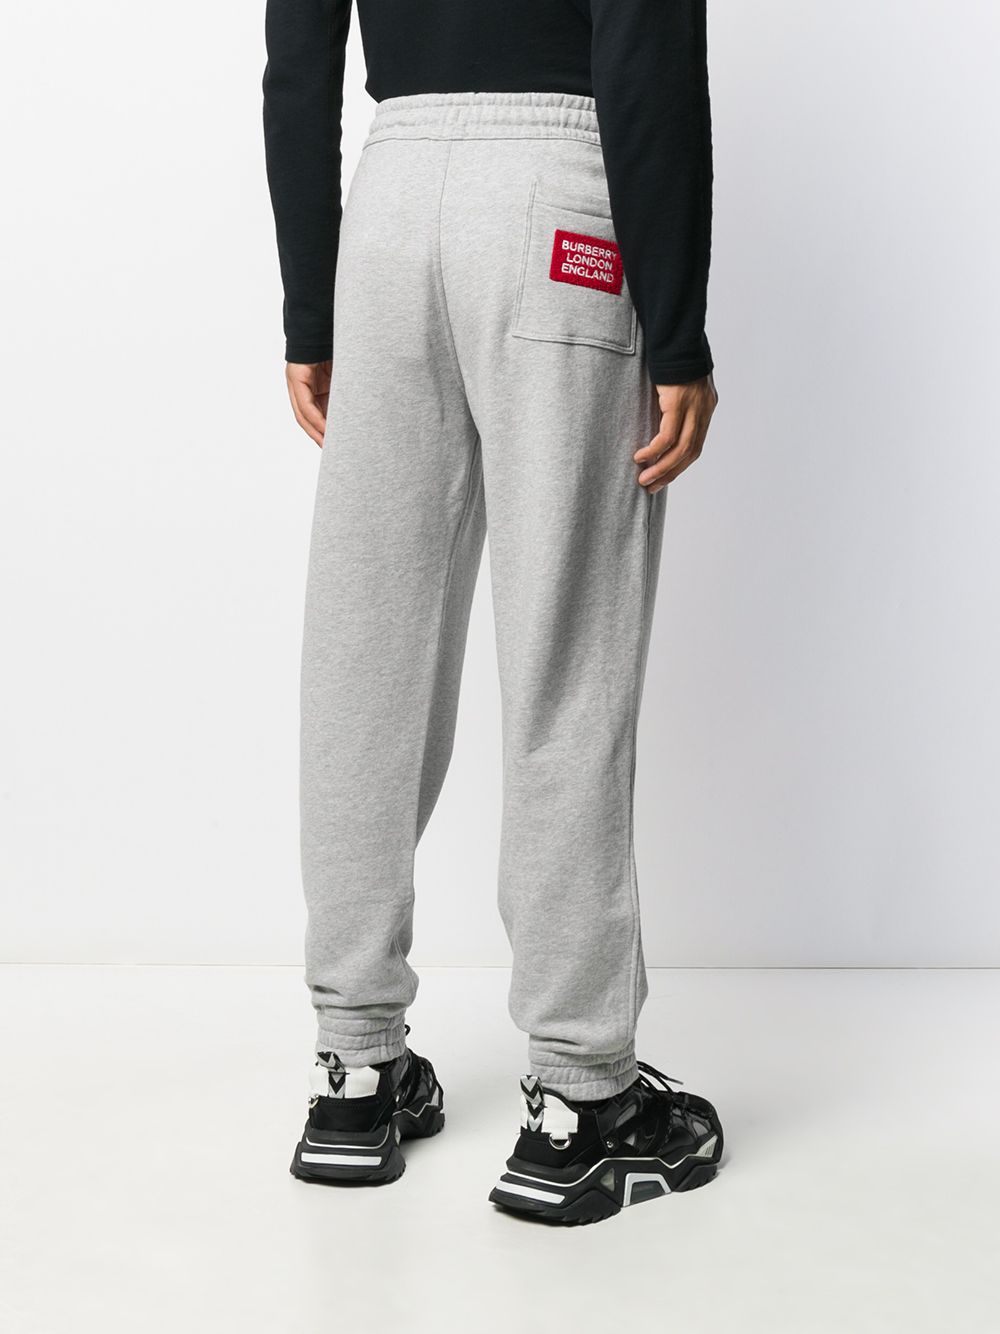 фото Burberry меланжевые спортивные брюки с логотипом